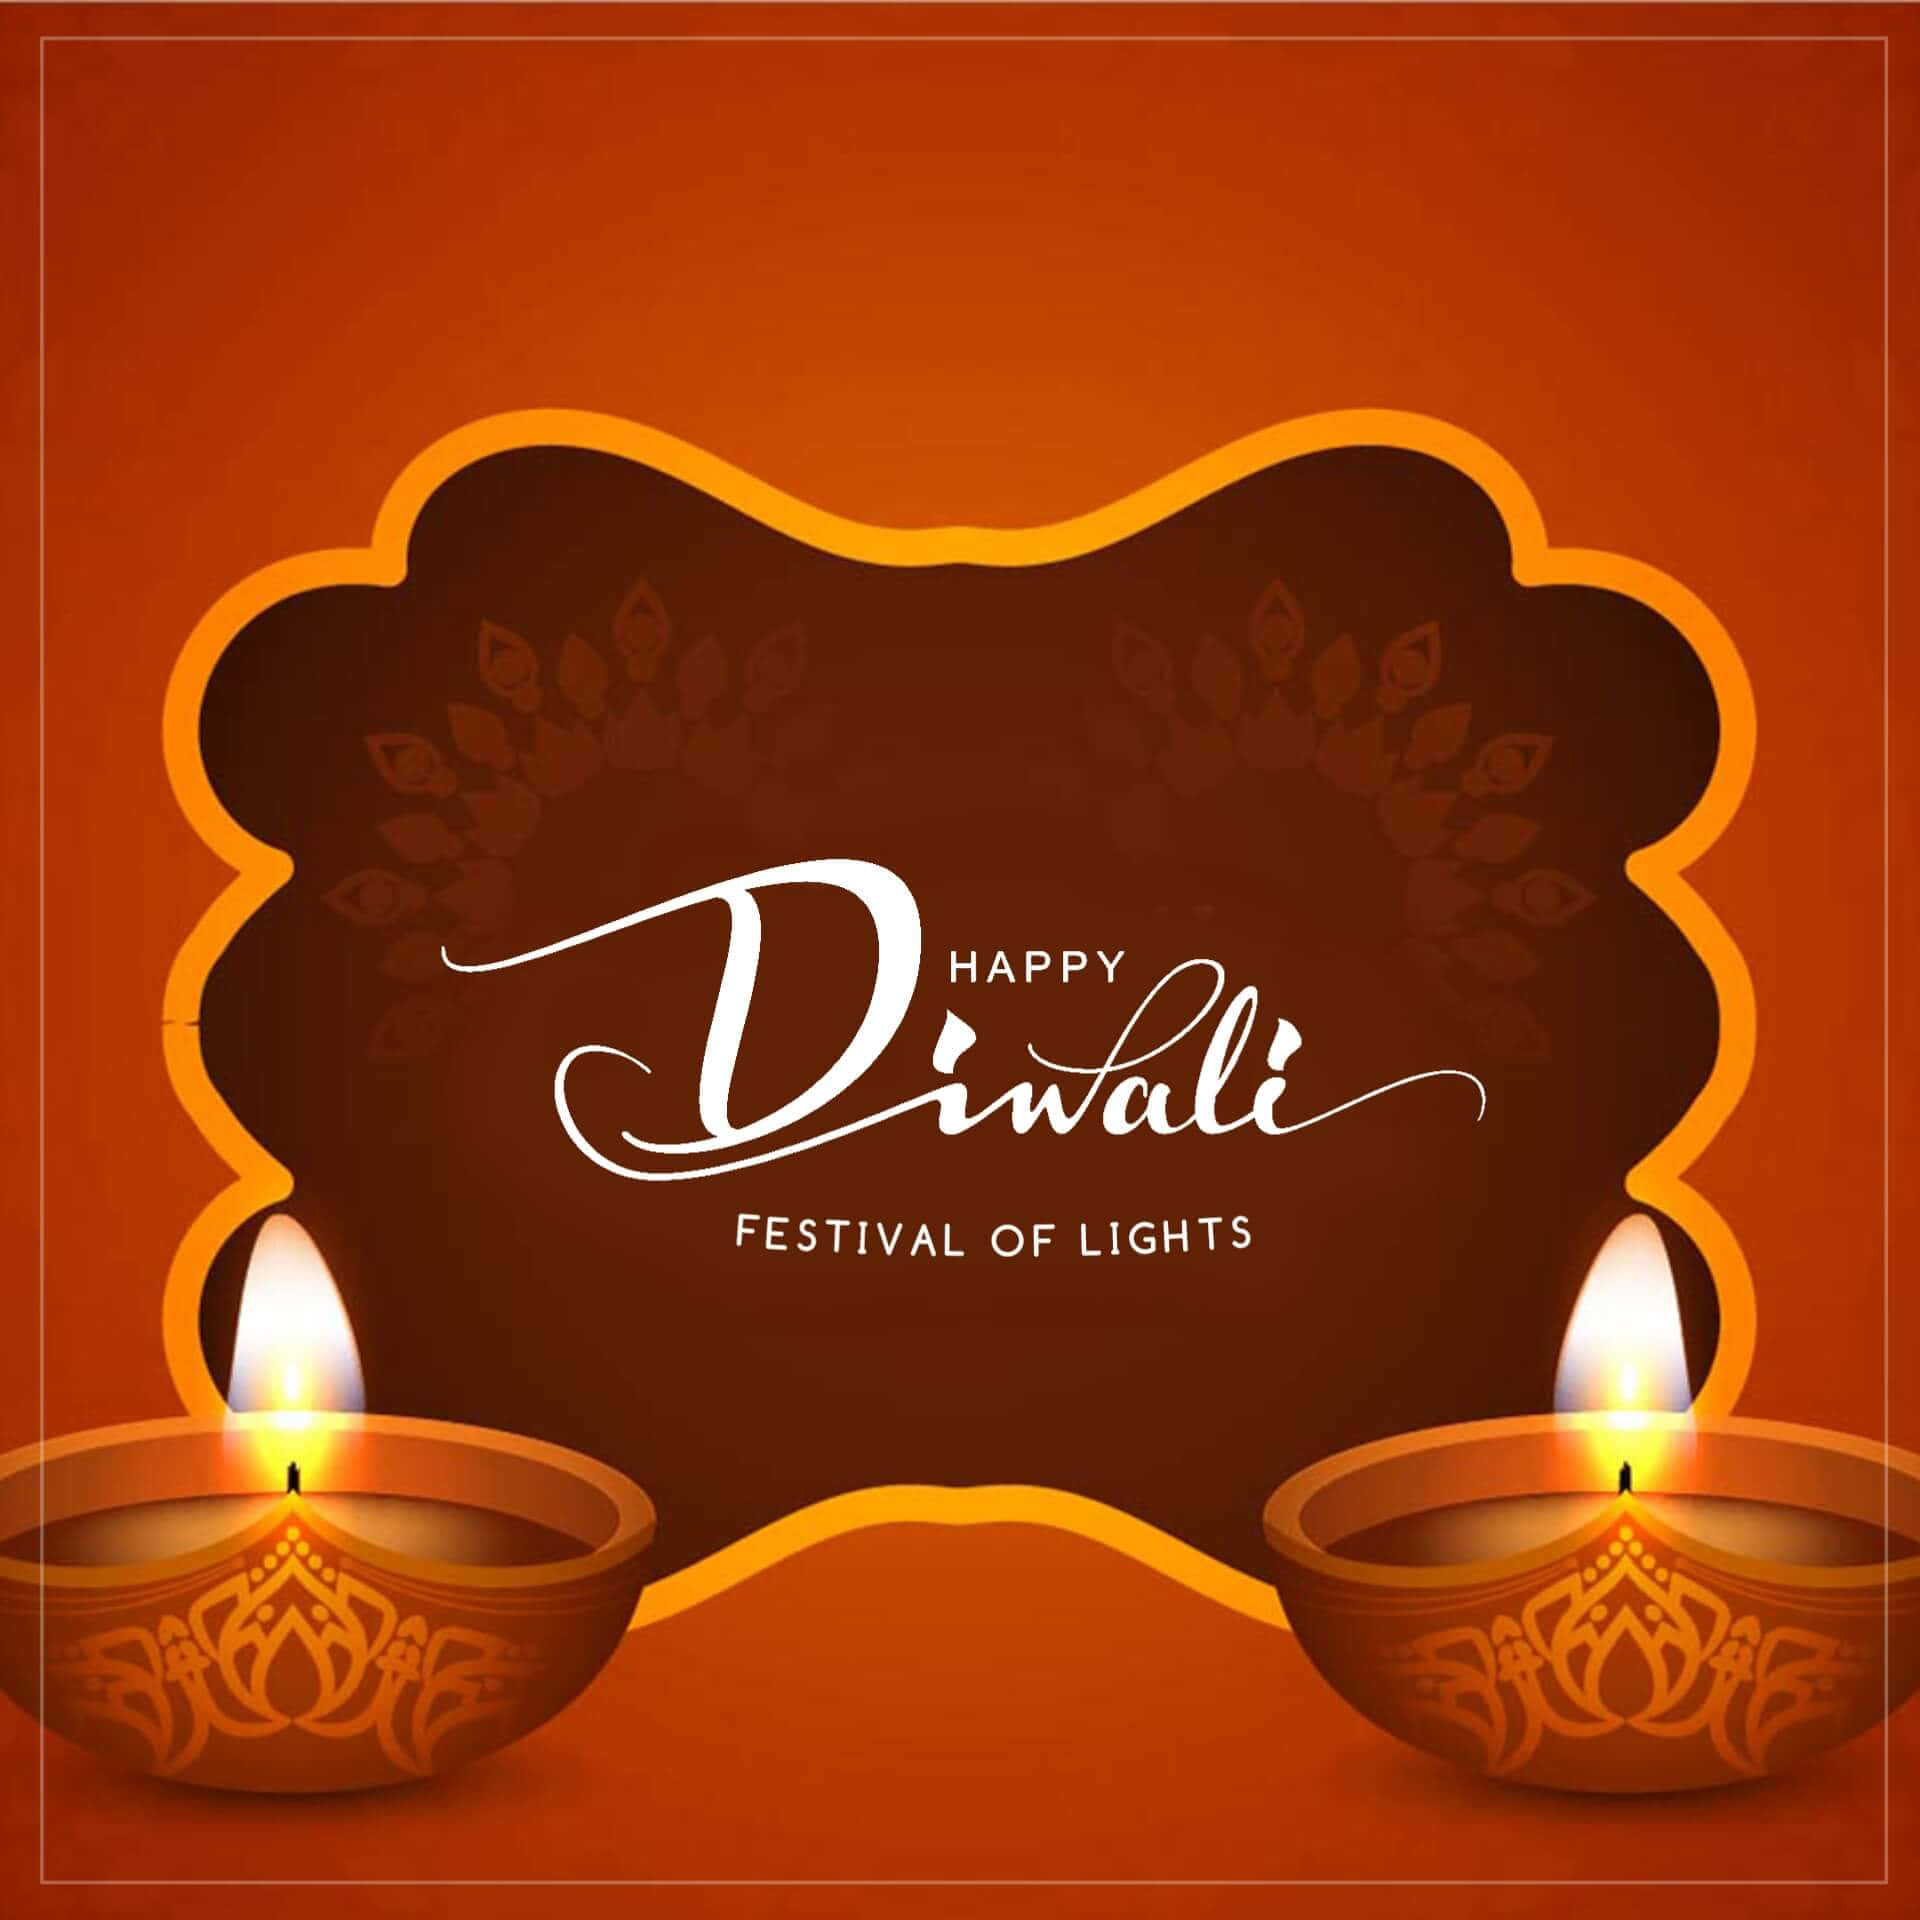 Desejandolhe Alegria E Prosperidade Neste Diwali!